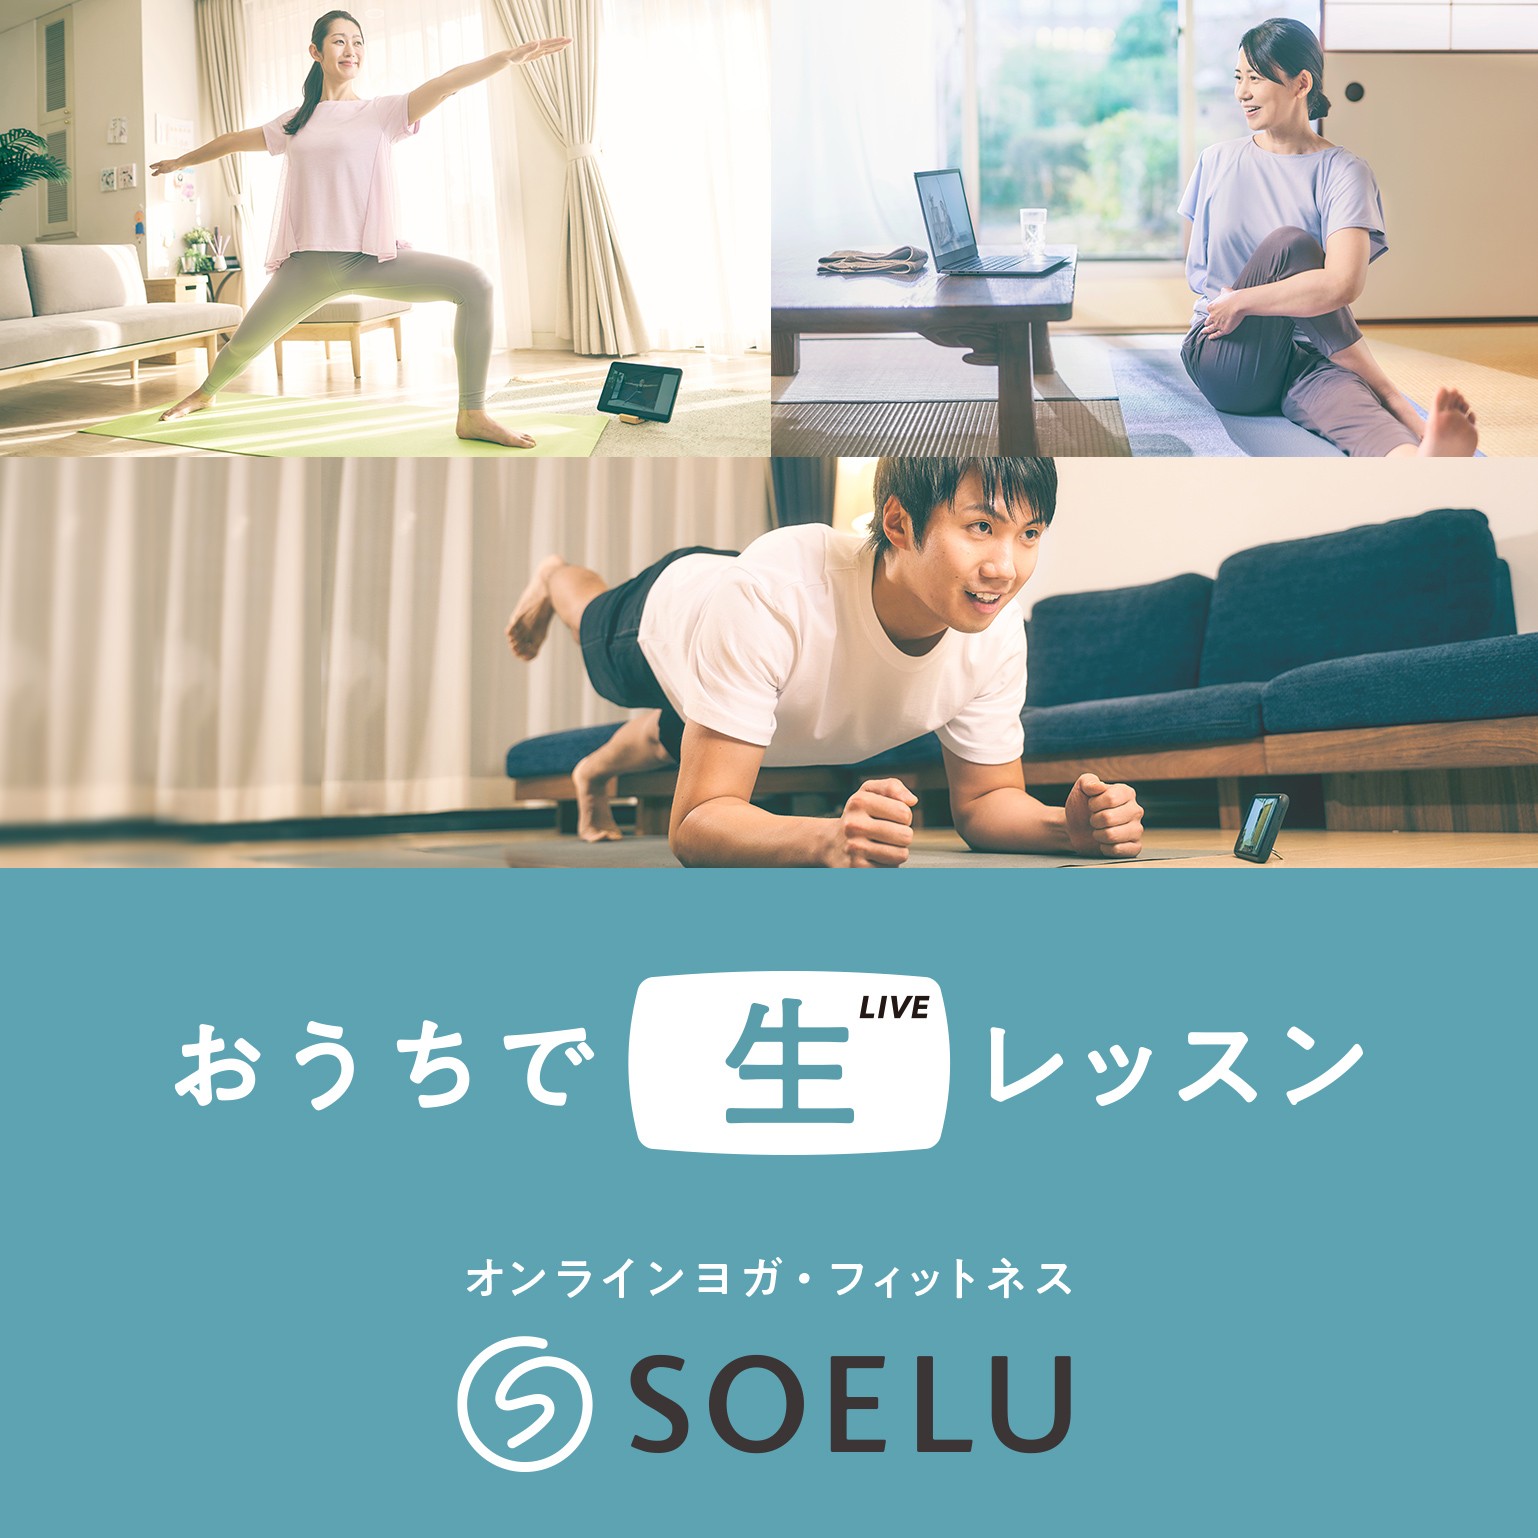 オンラインヨガ・フィットネスはSOELU(ソエル) | 顧客満足度No.1